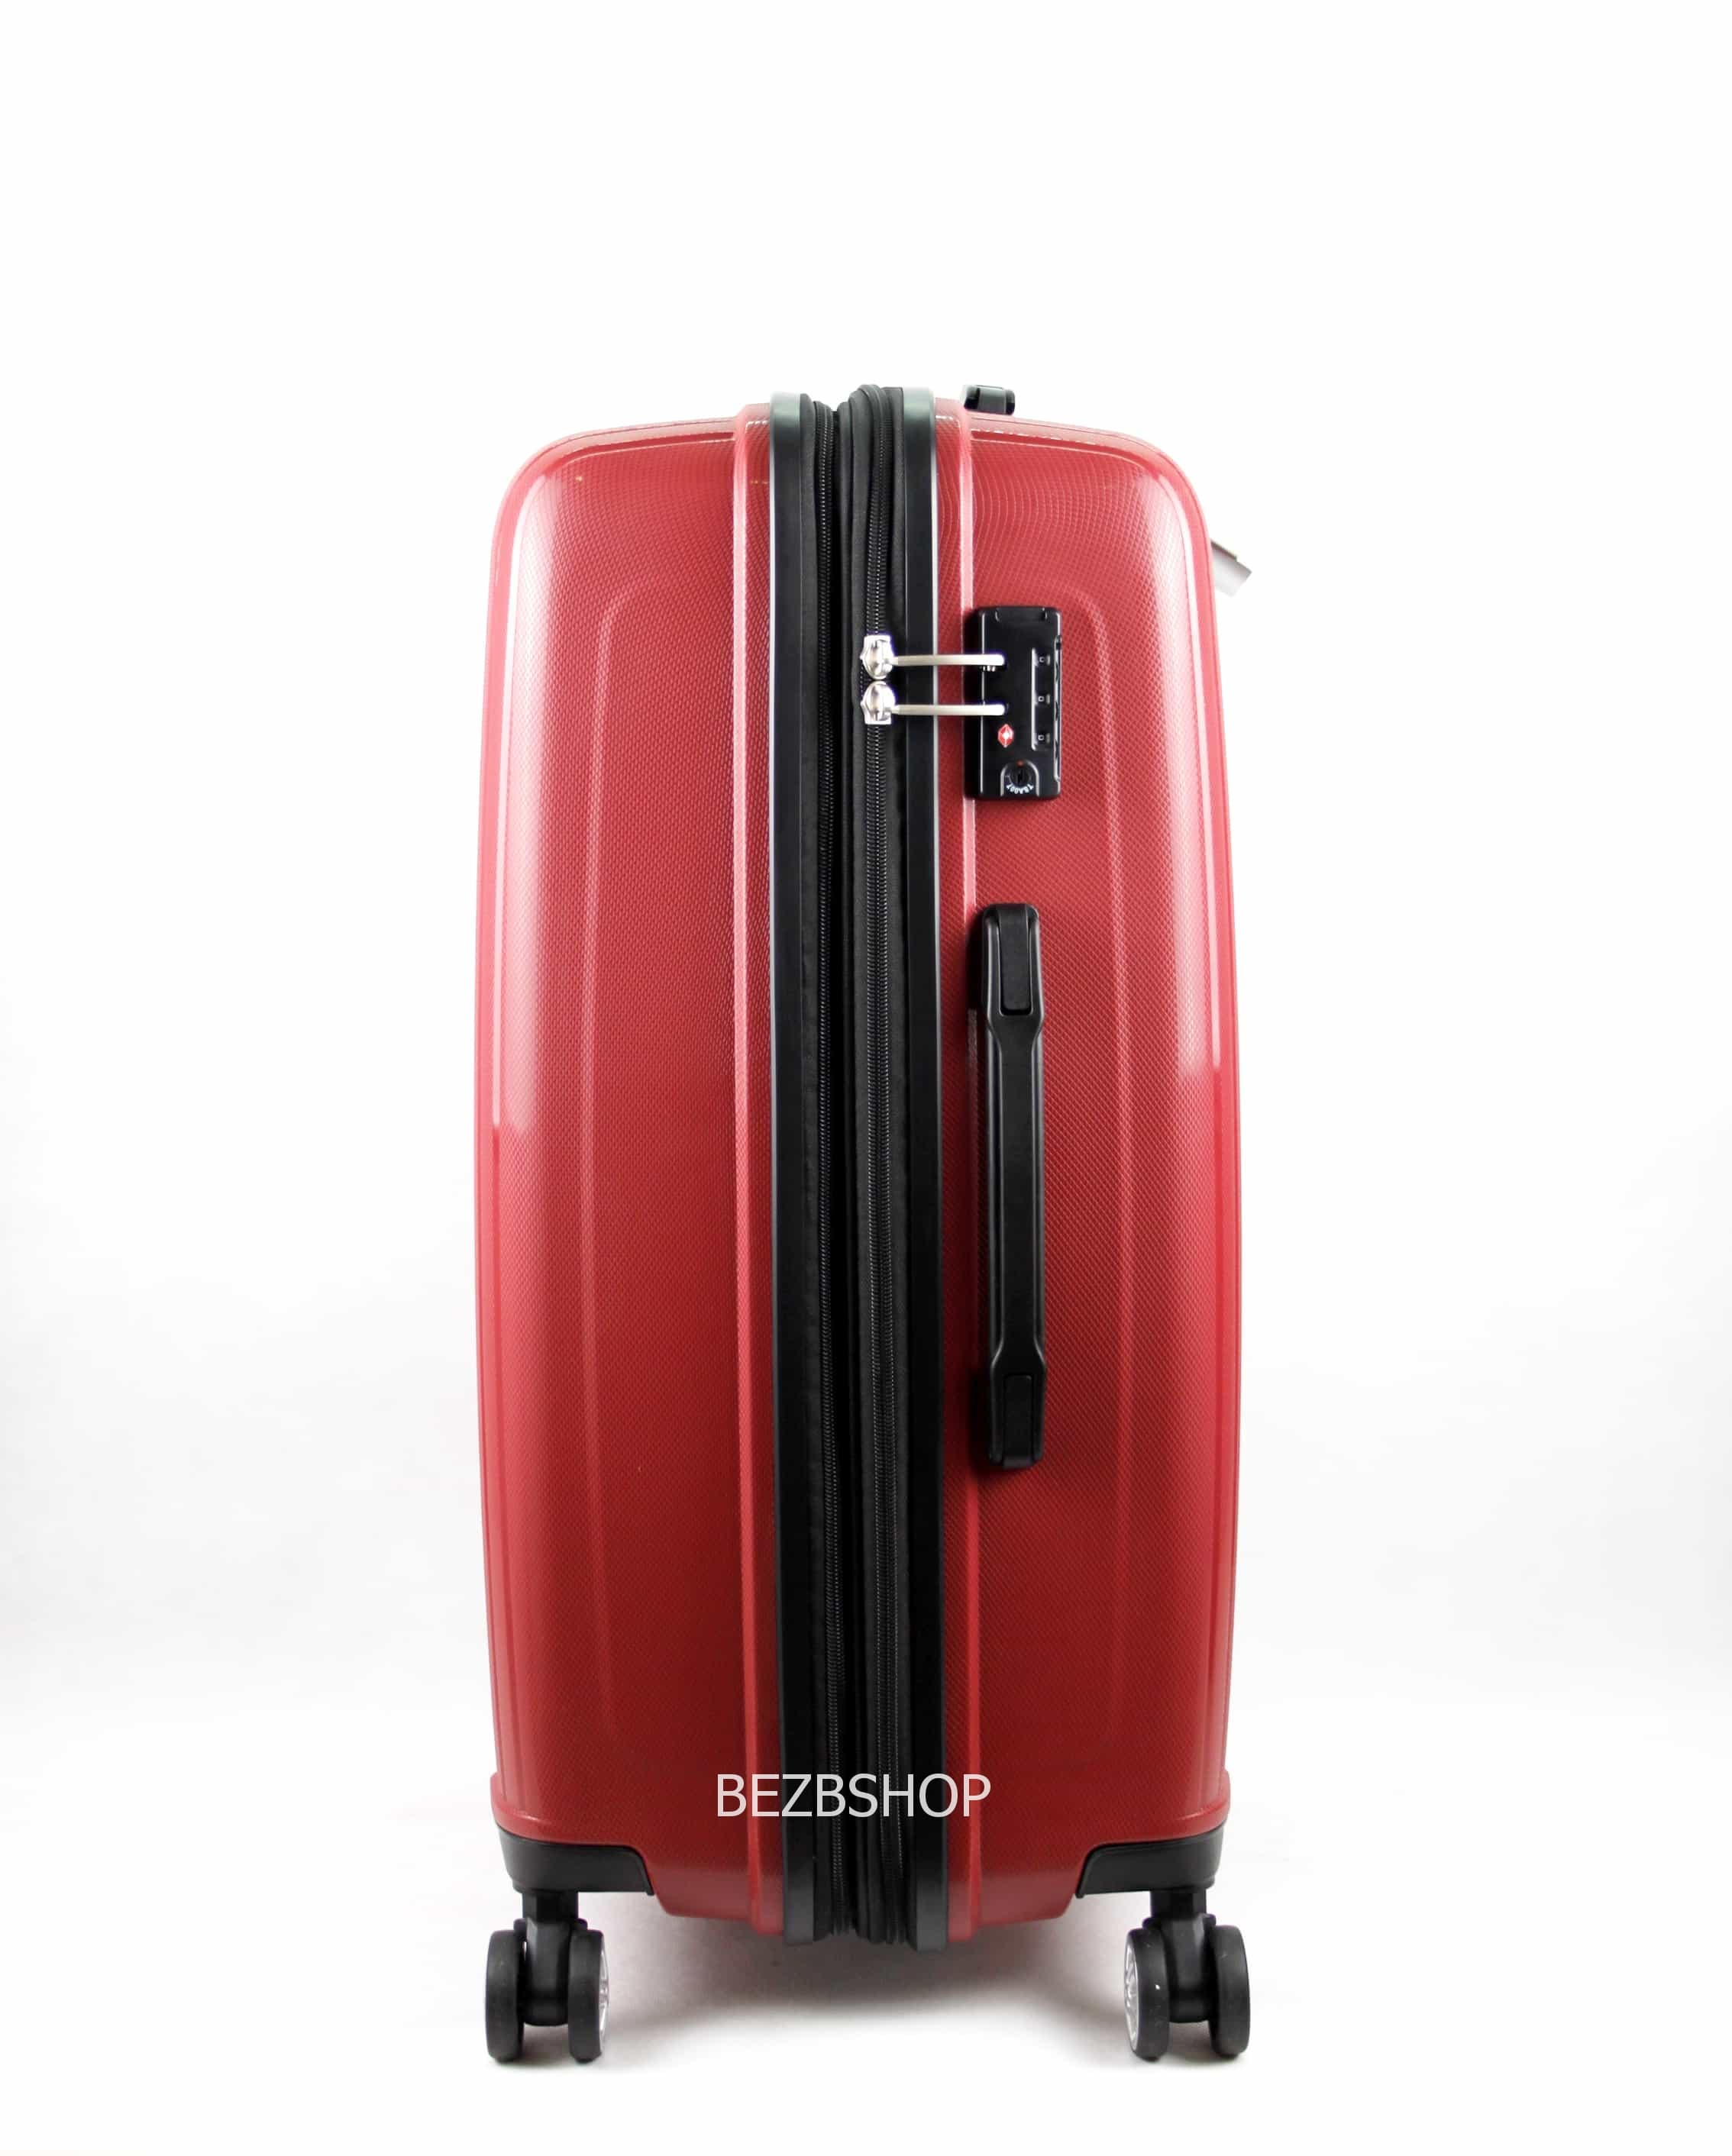 Французский ударостойкий чемодан Большой из полипропилена на 4-ых колесах Для багажа,до 18 кг - 2